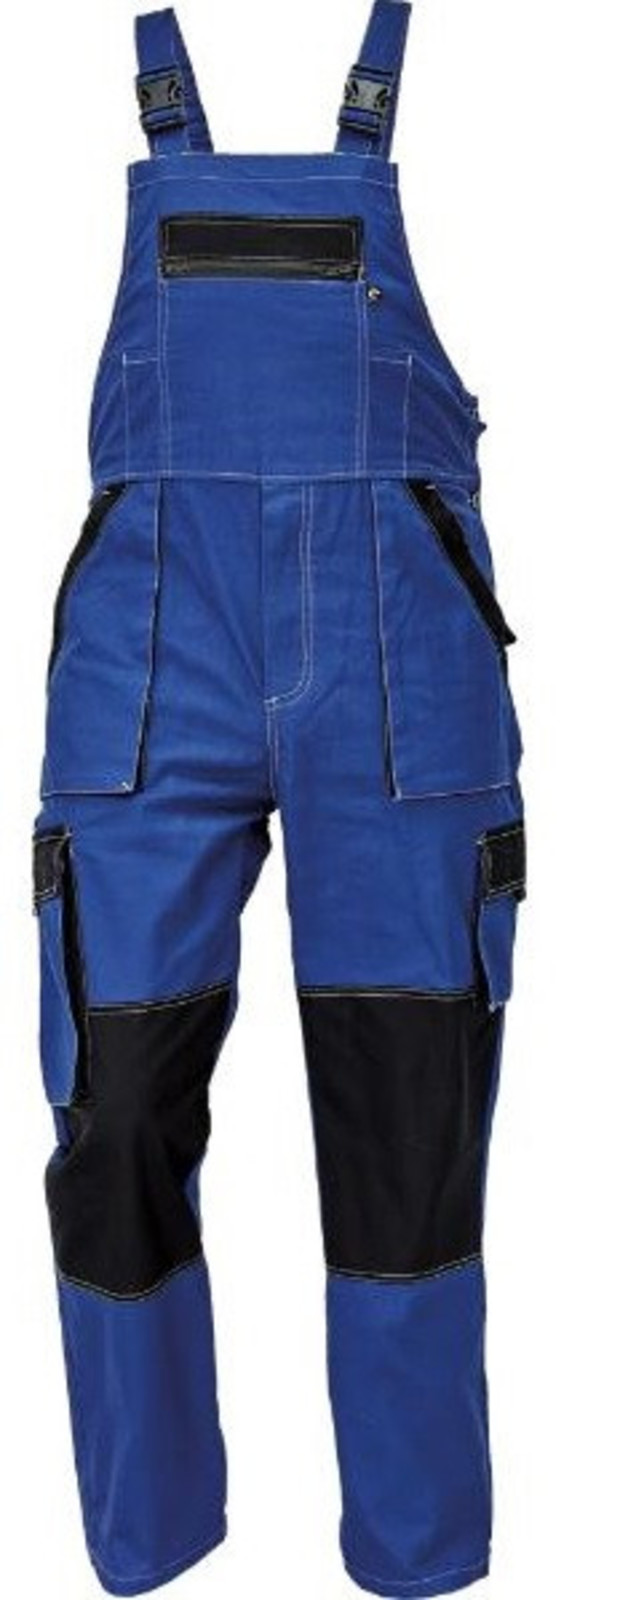 Tenšie bavlnené montérky na traky Max Summer - veľkosť: 54, farba: modrá/čierna